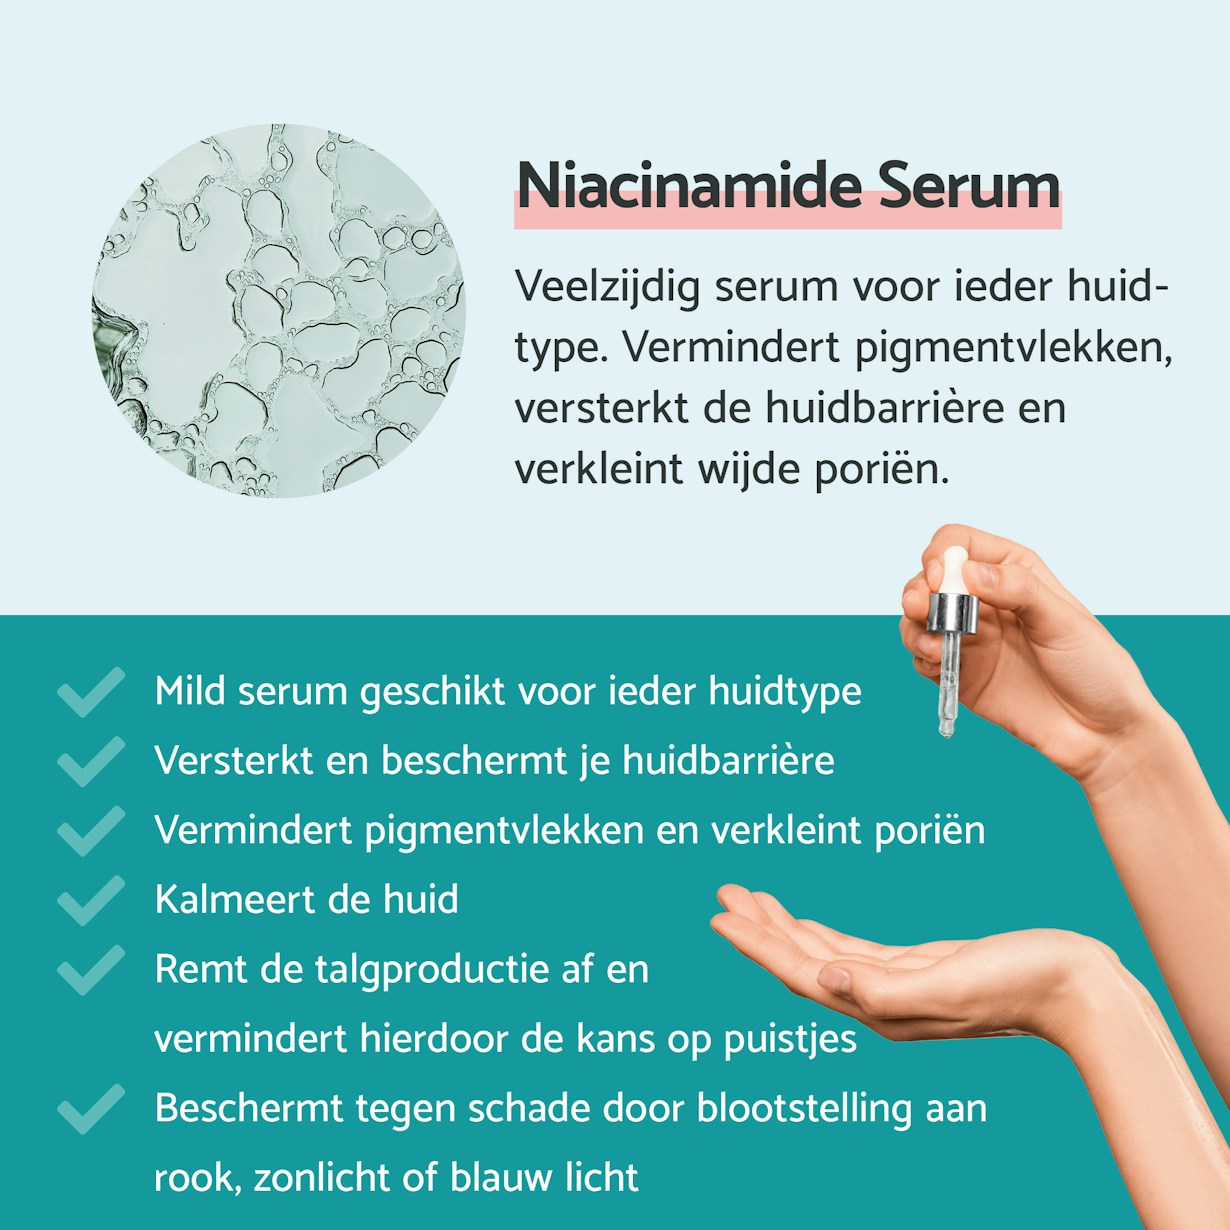 Niacinamide Serum: veelzijdig serum voor ieder huidtype